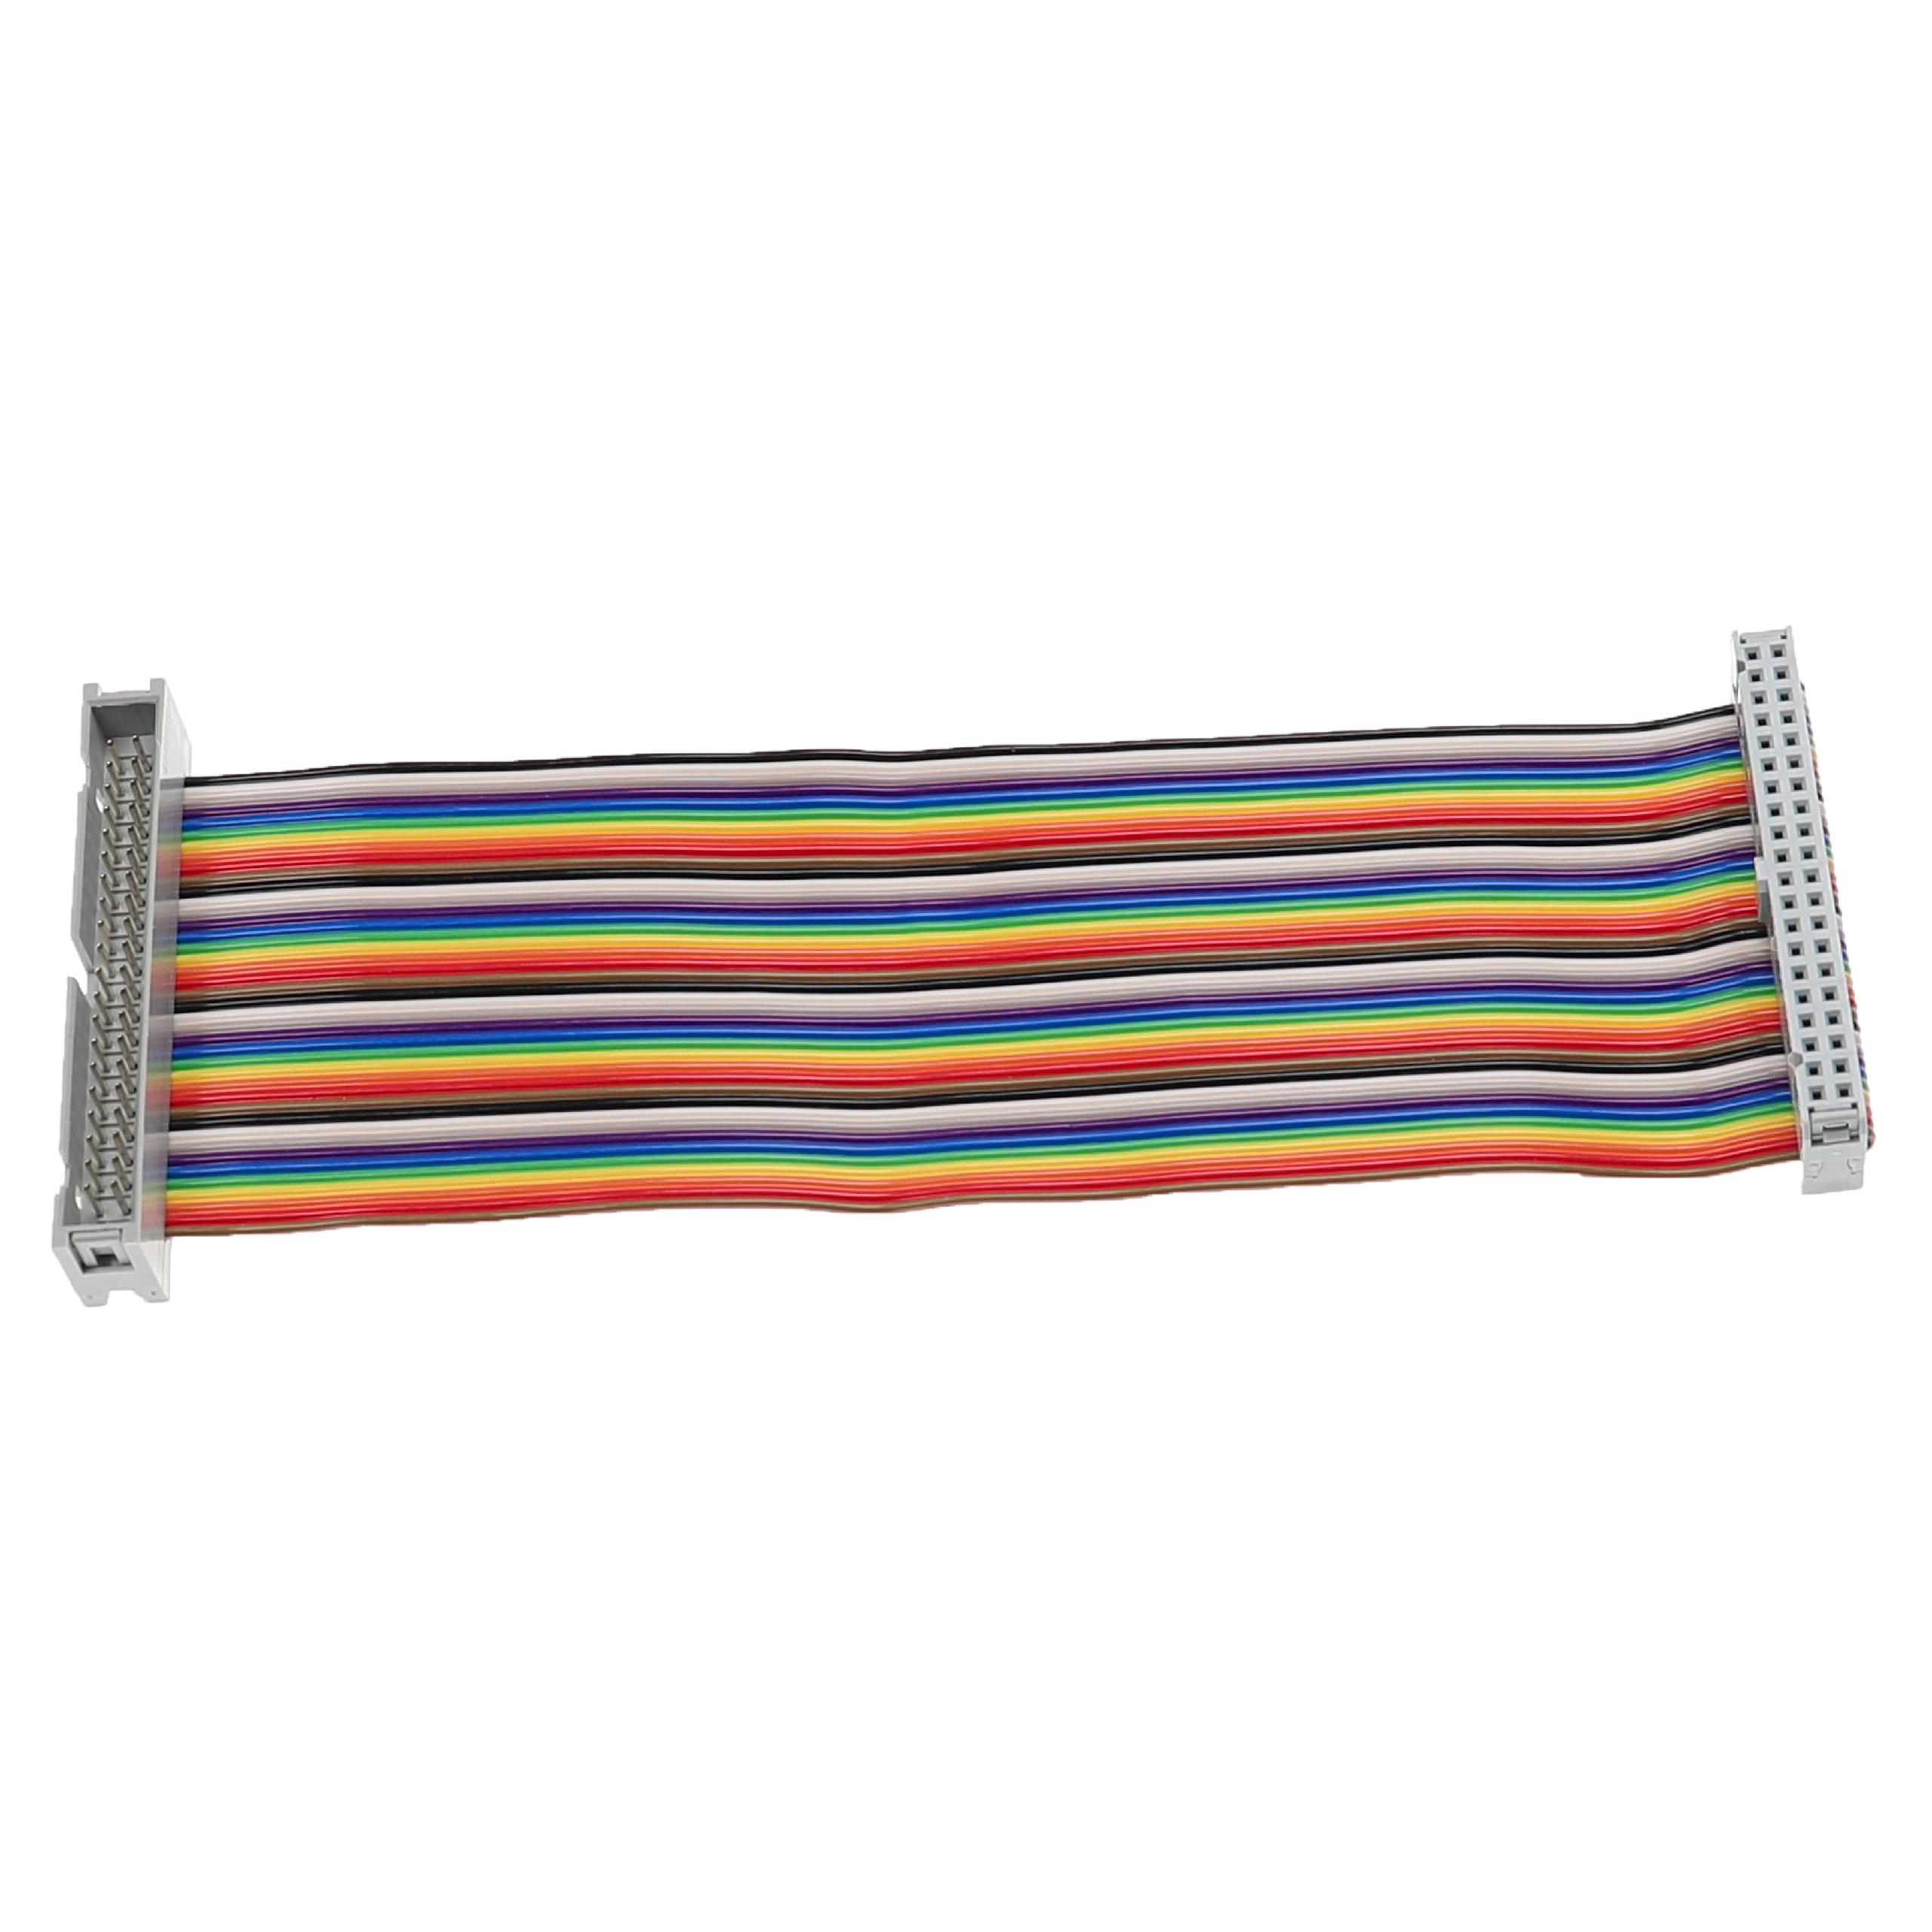 GPIO Cable 40 Pin suitable for Raspberry Pi Mini Computer - GPIO Extension Cable, Multi-Coloured, 15 cm